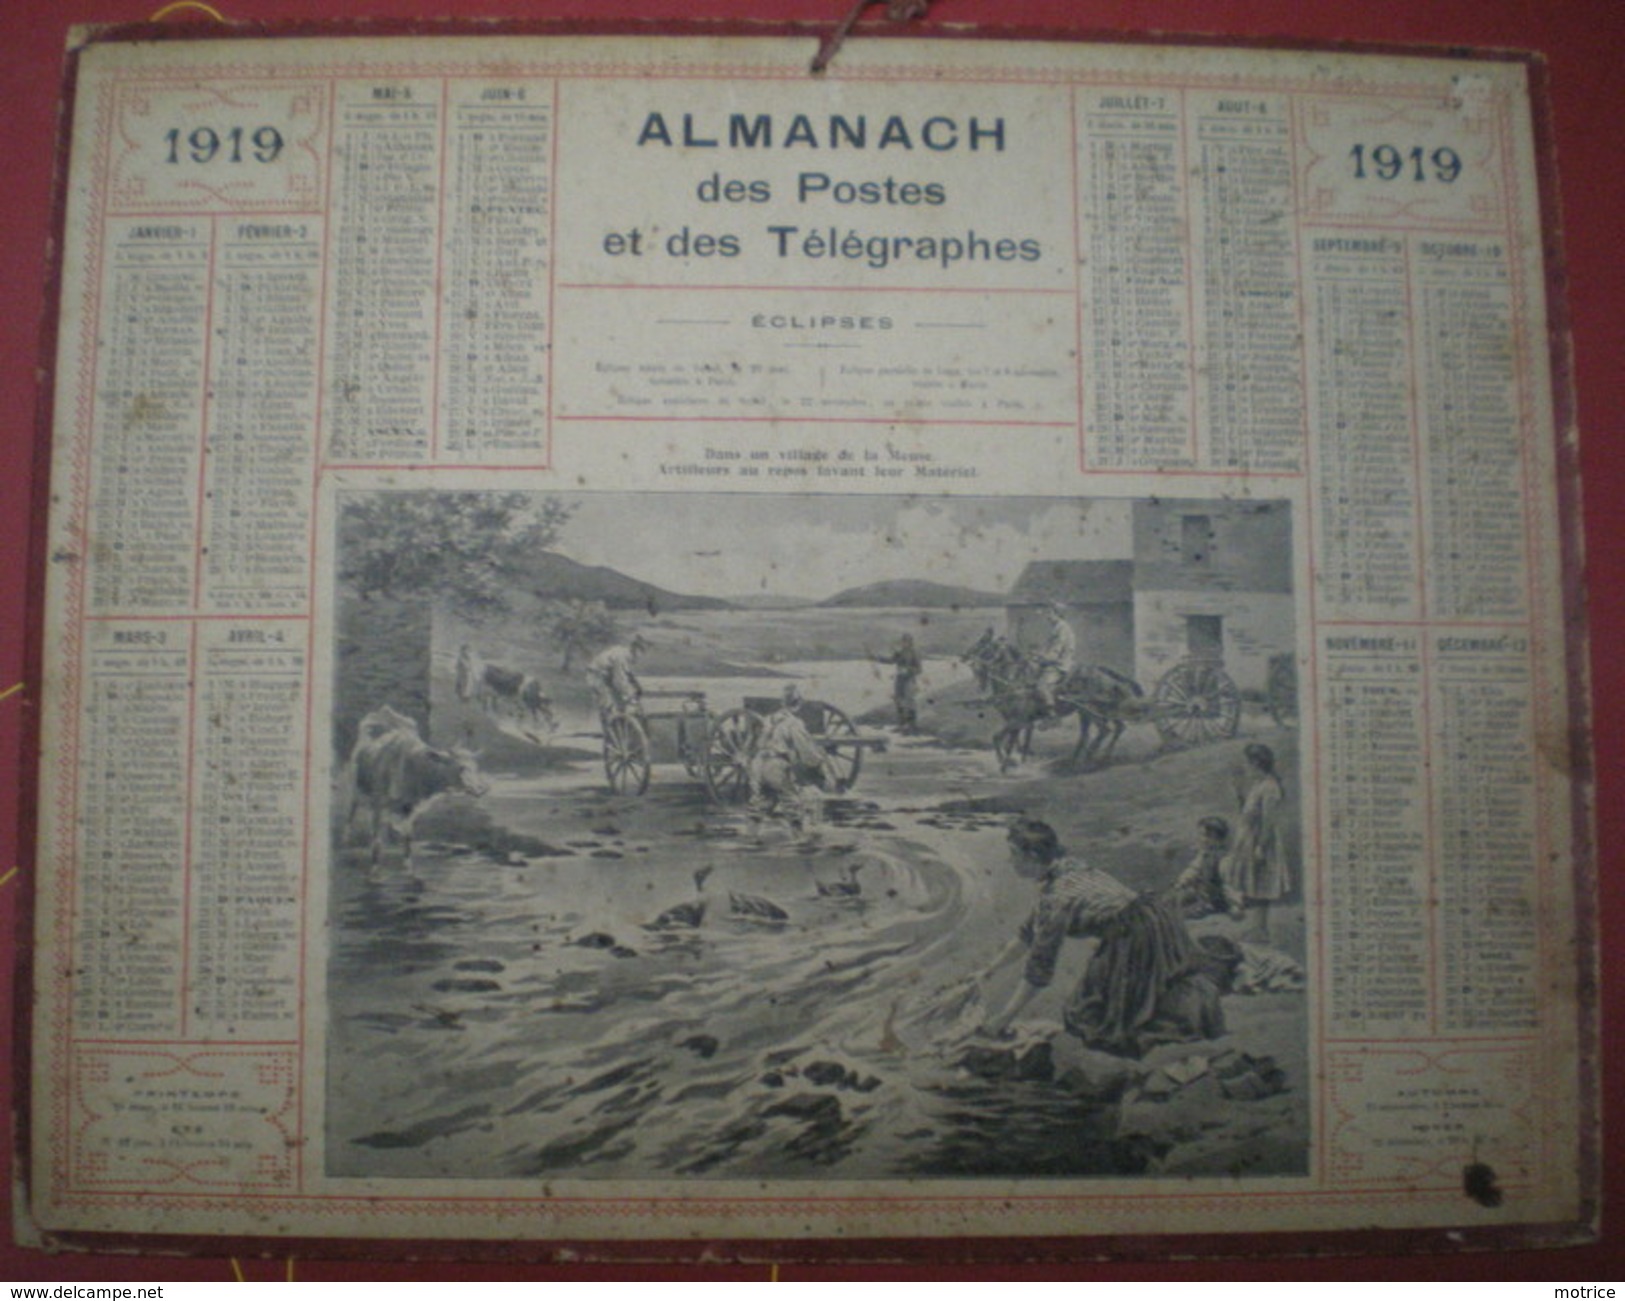 ALMANACH DES POSTES ET DES TÉLÉGRAPHES (Eclipses)  1919 - Dans Un Village De La Meuse, Artilleurs Au Repos. - Groot Formaat: 1901-20